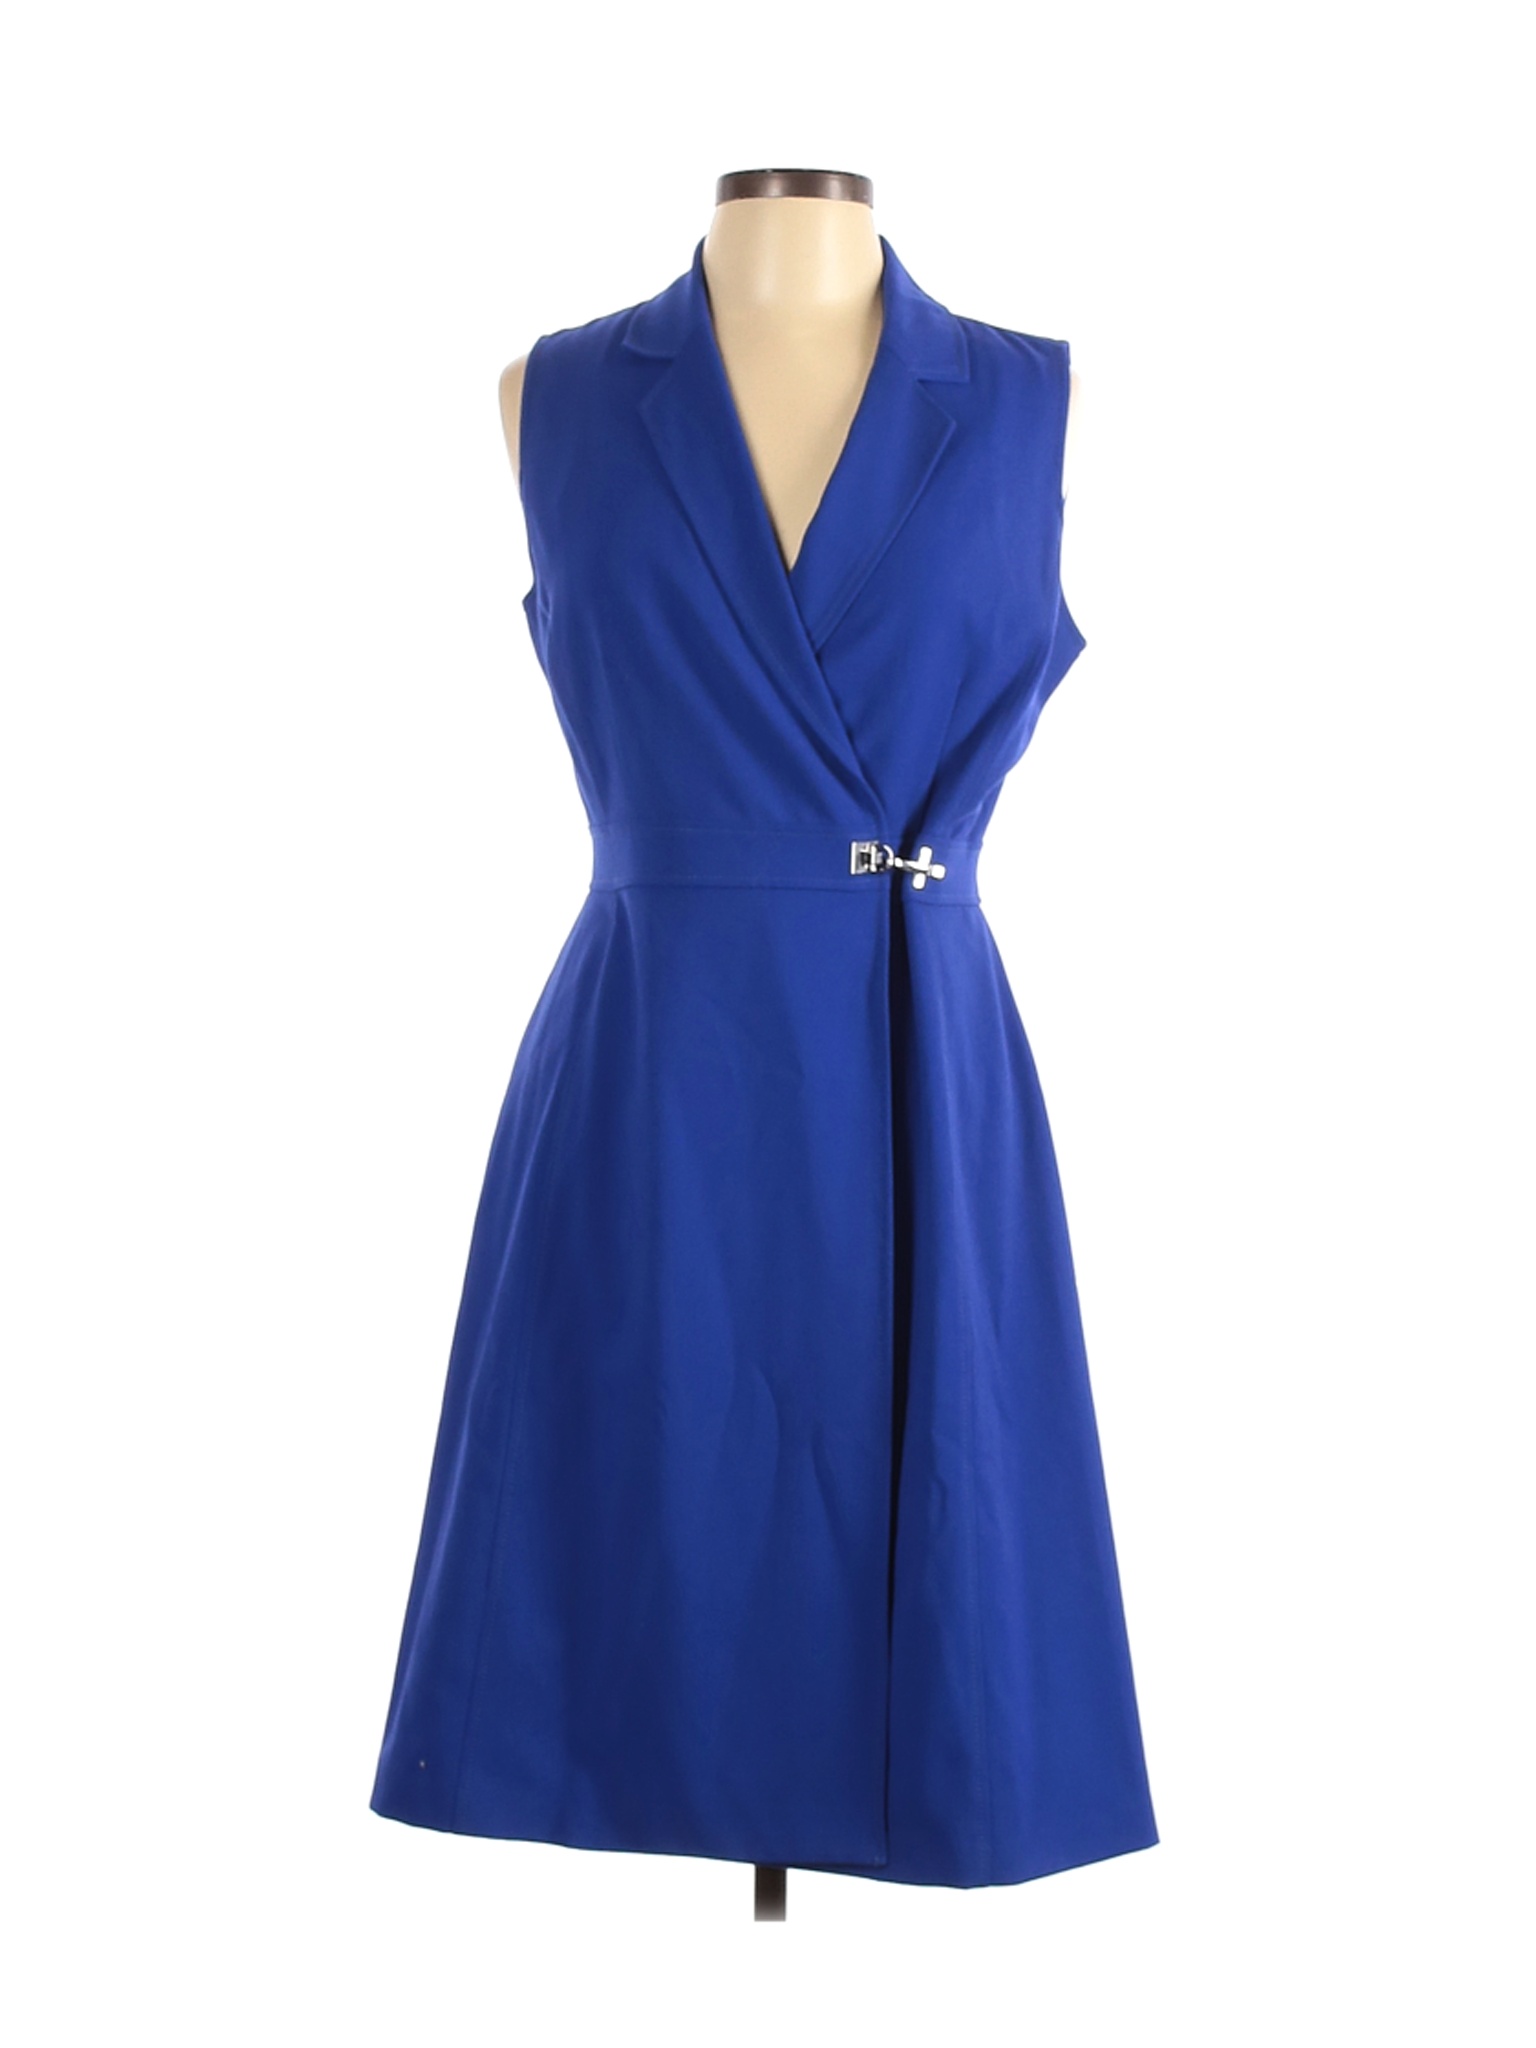 Calvin Klein Women Blue Cocktail Dress 10 | eBay